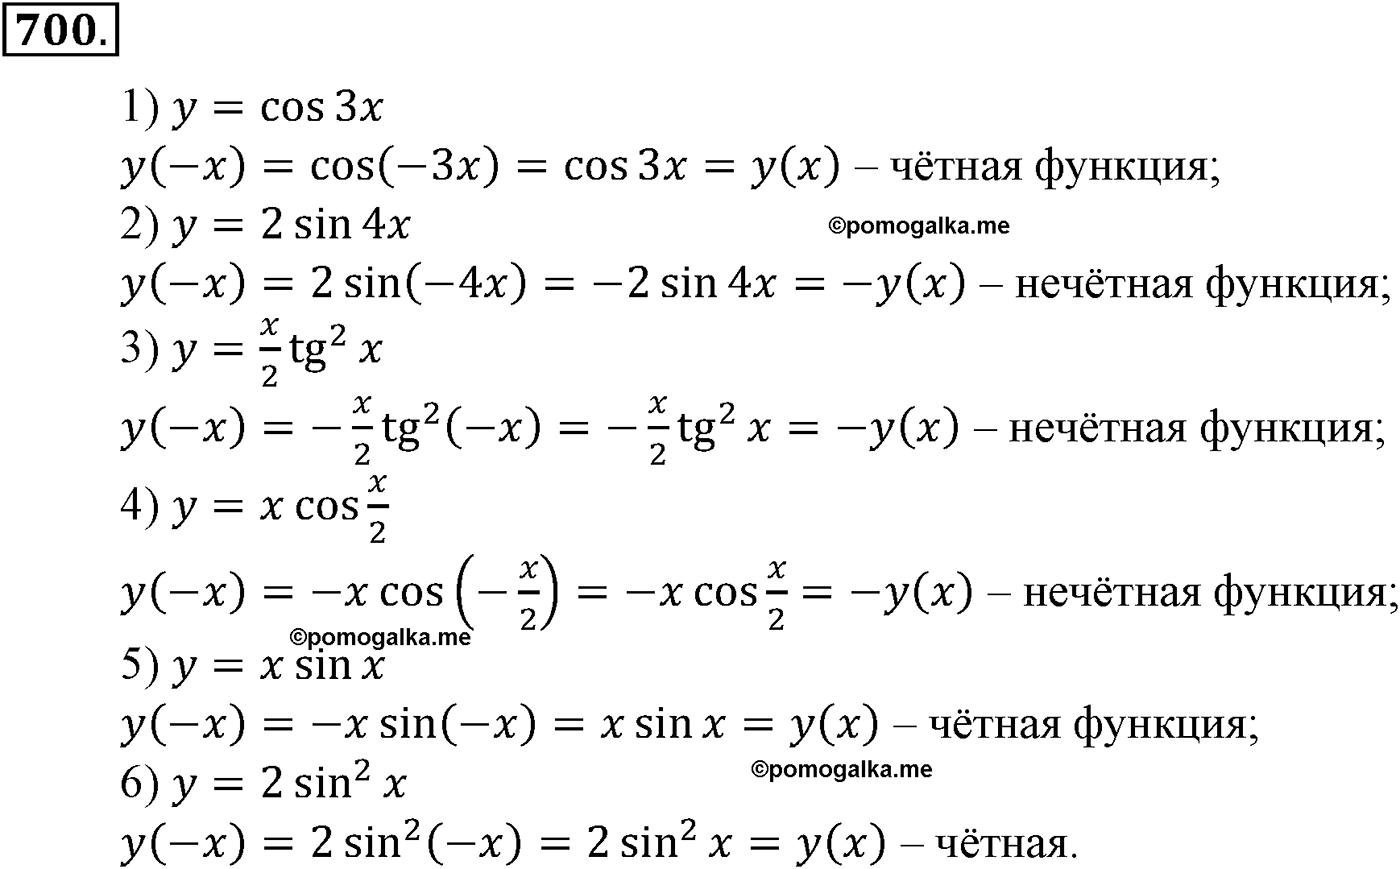 разбор задачи №700 по алгебре за 10-11 класс из учебника Алимова, Колягина